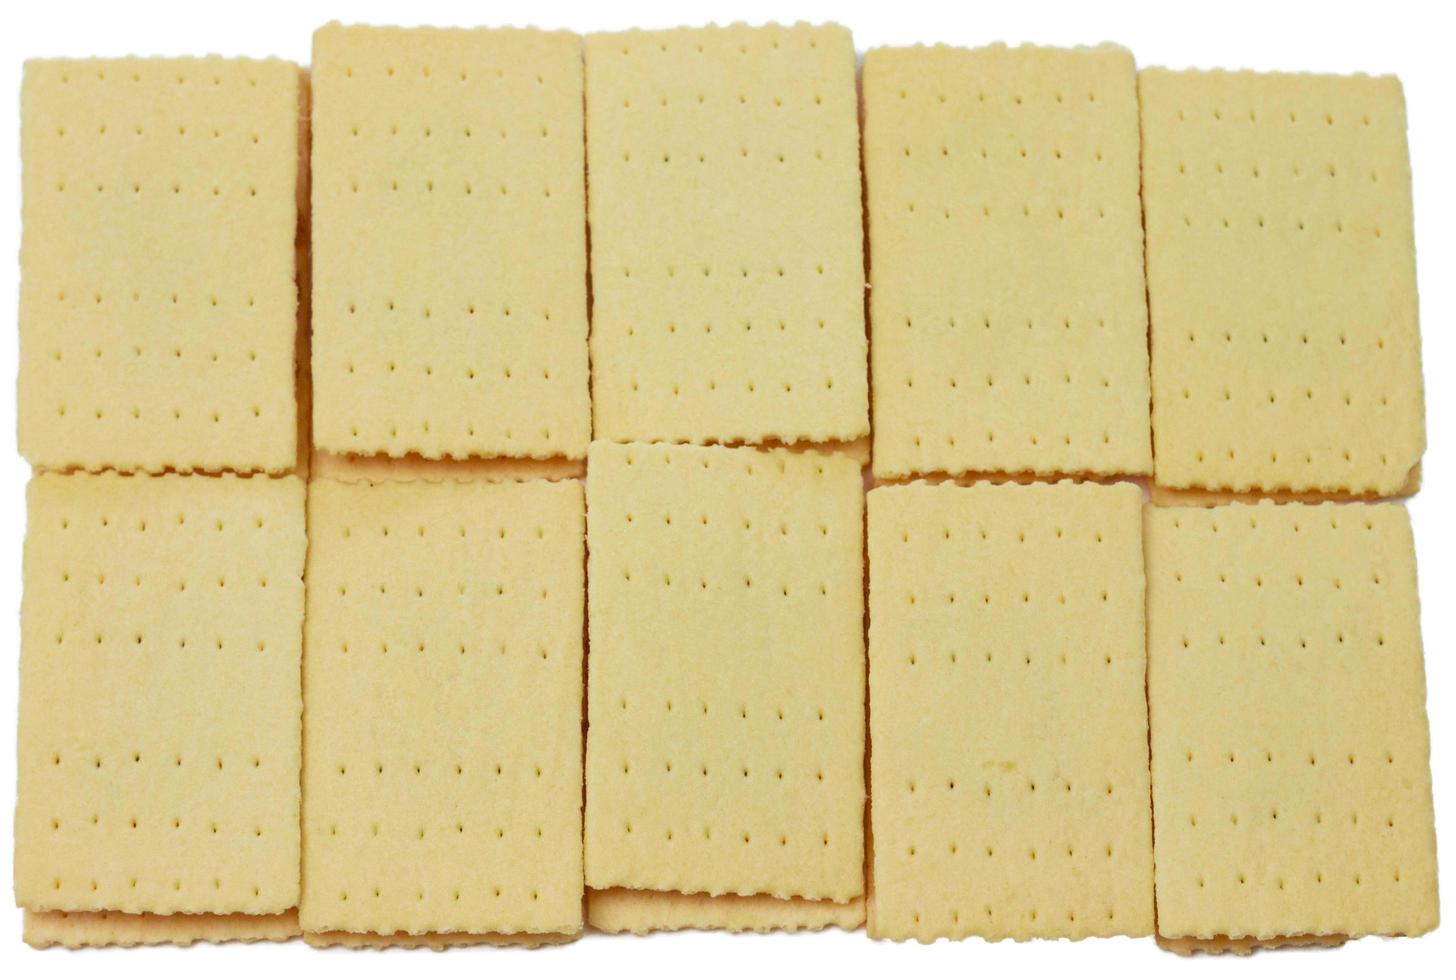 biscoitos recheados de abacaxi no fundo branco foto